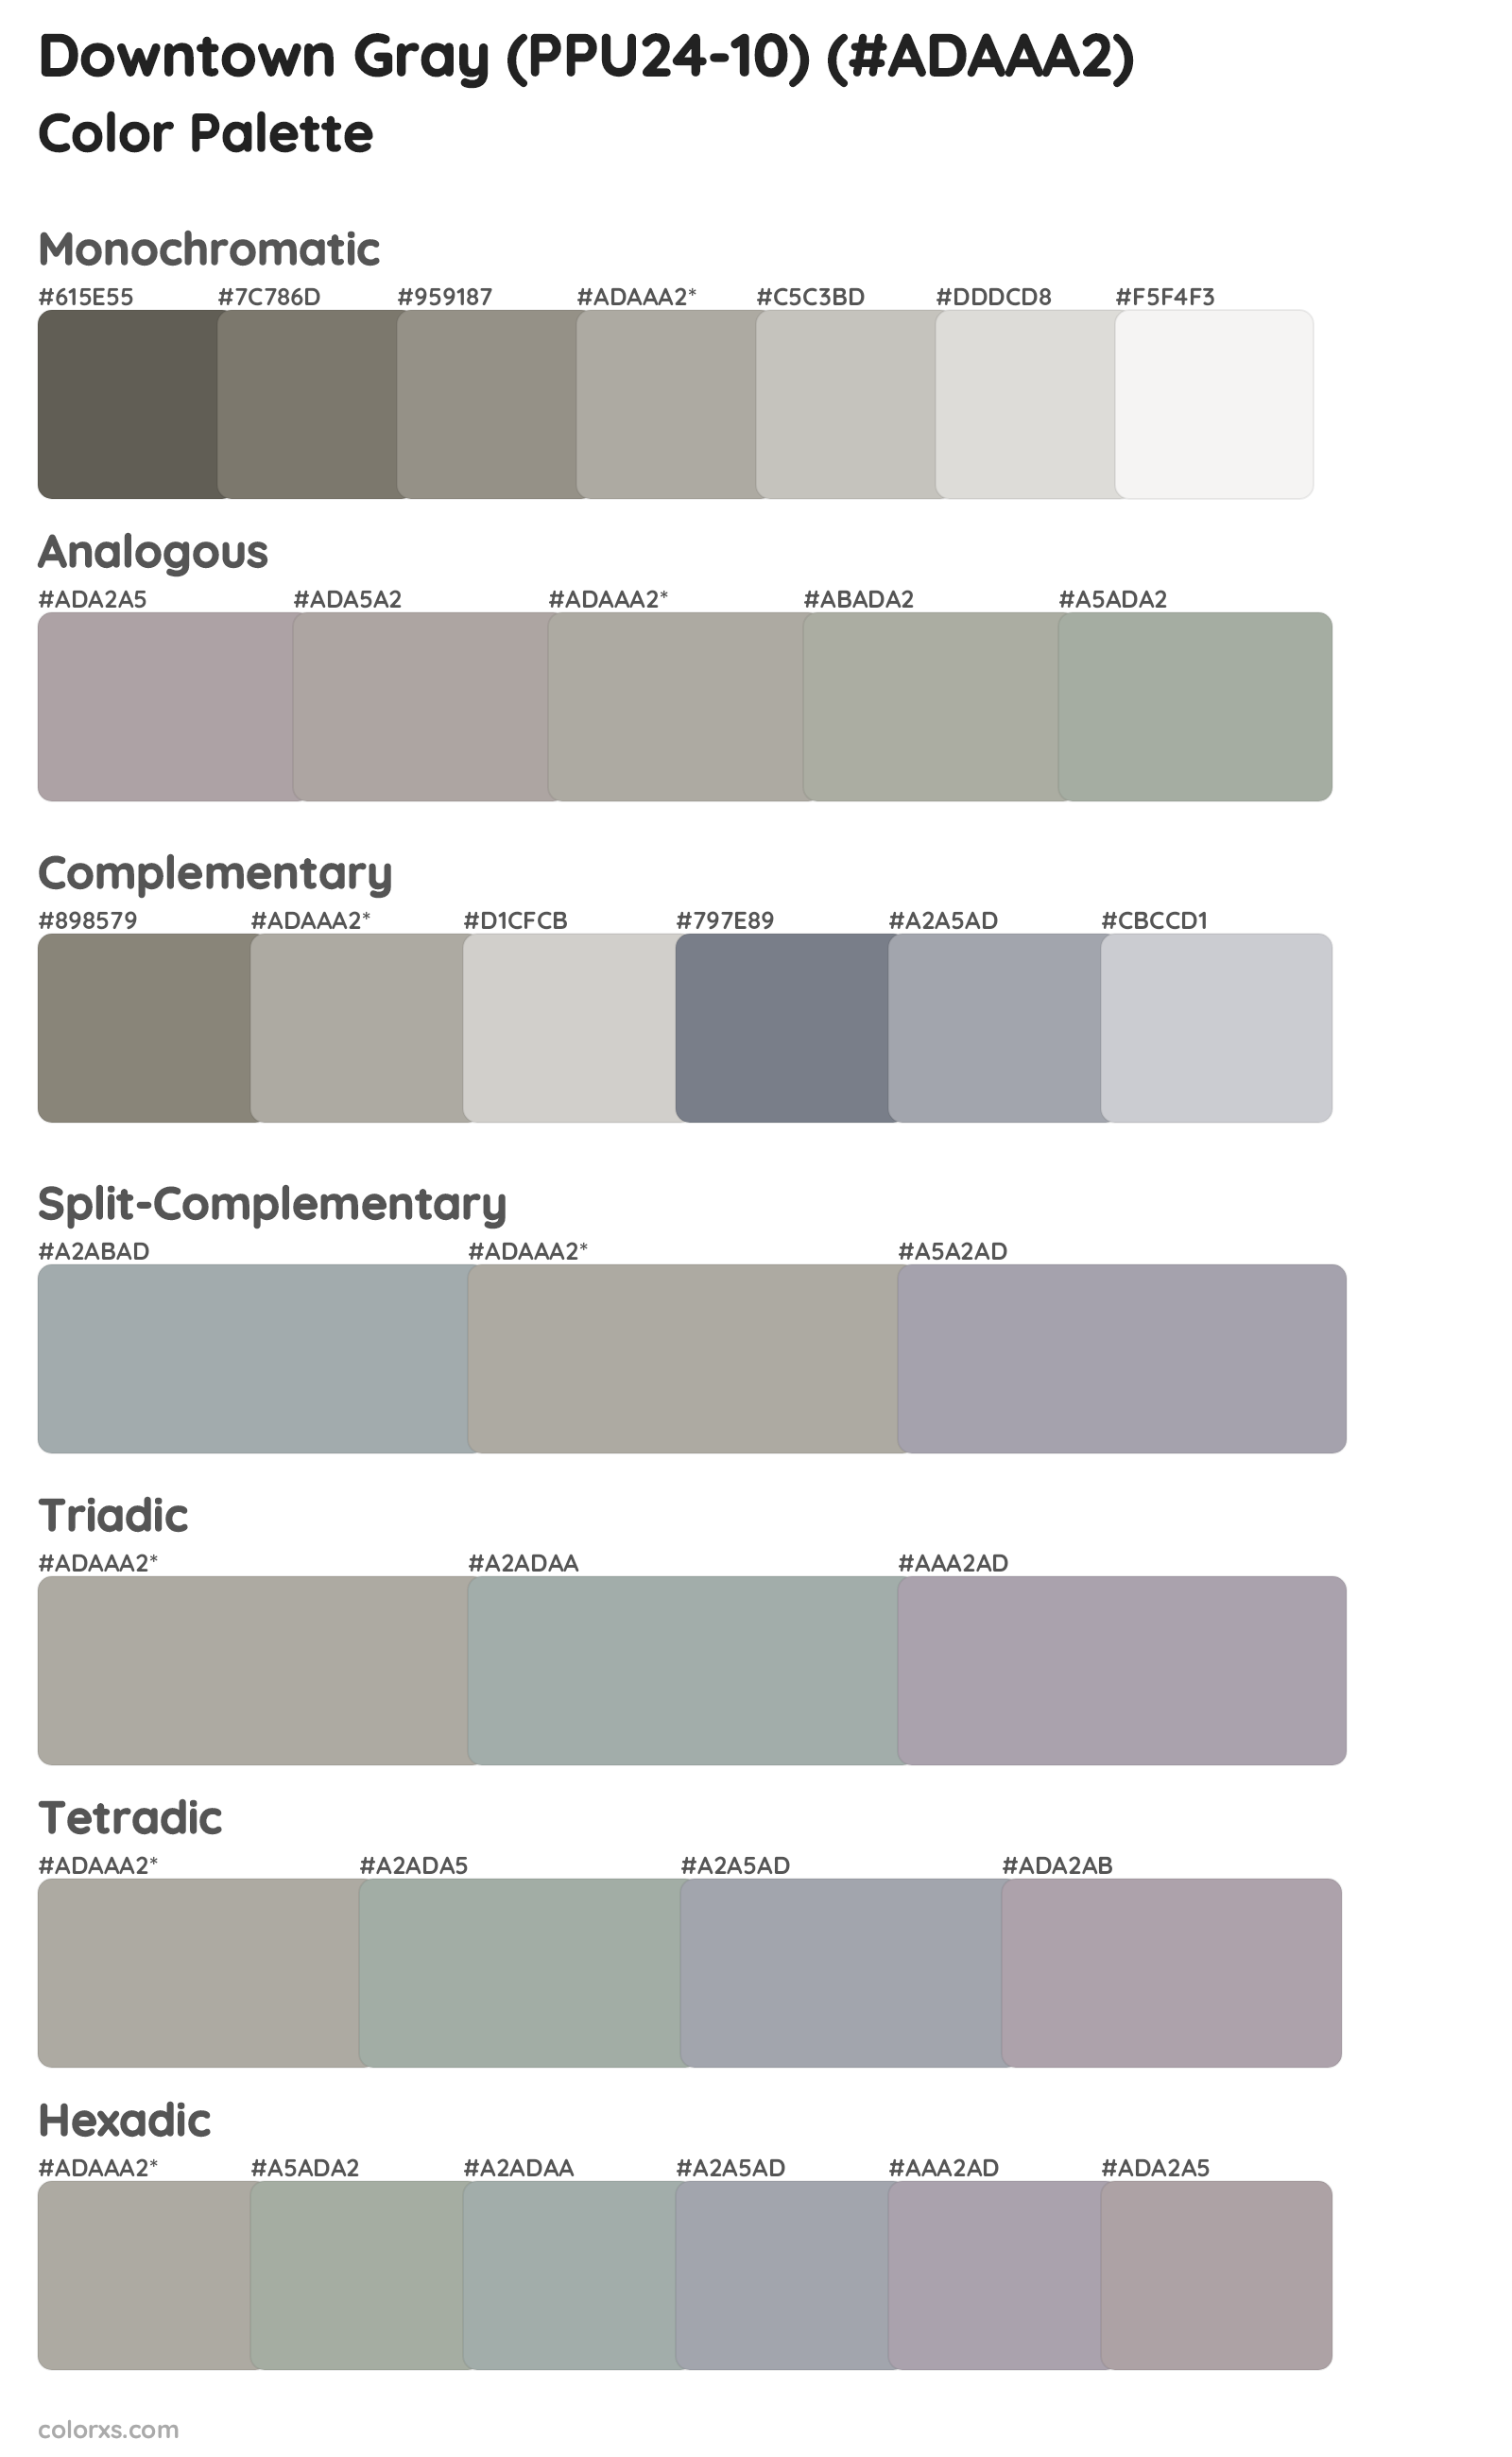 Downtown Gray (PPU24-10) Color Scheme Palettes